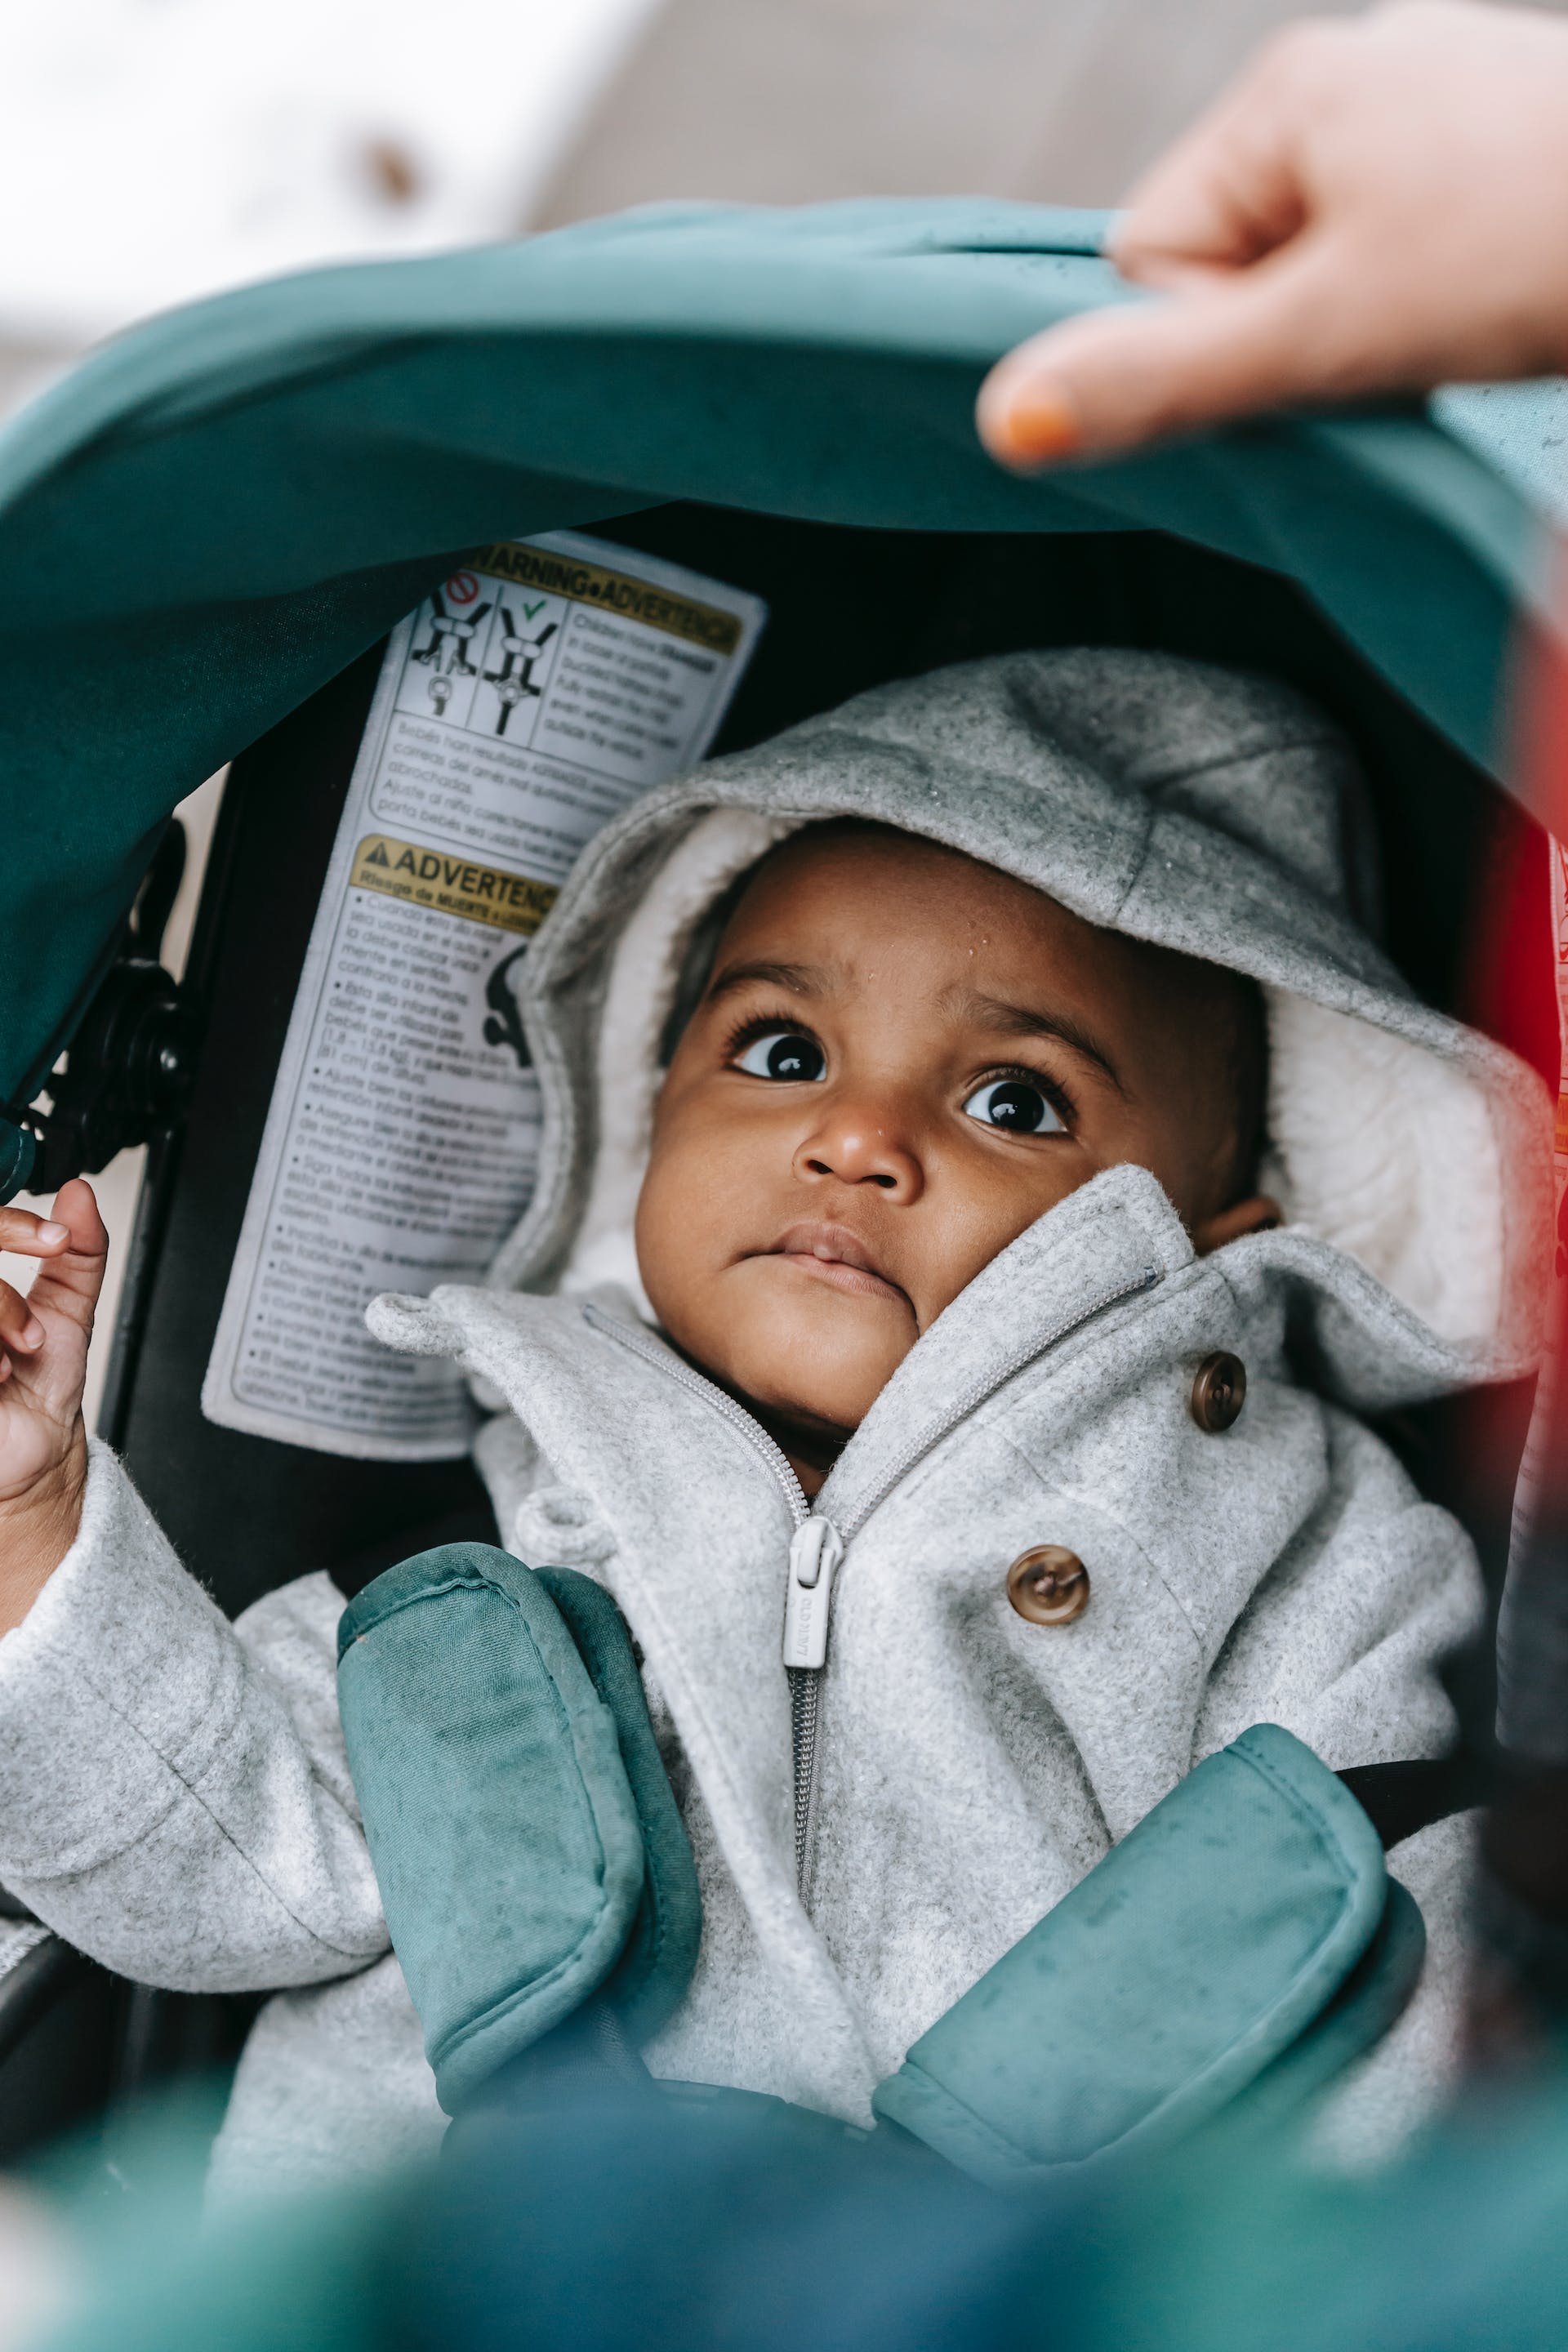 Ein Baby in einem Kinderwagen | Quelle: Pexels